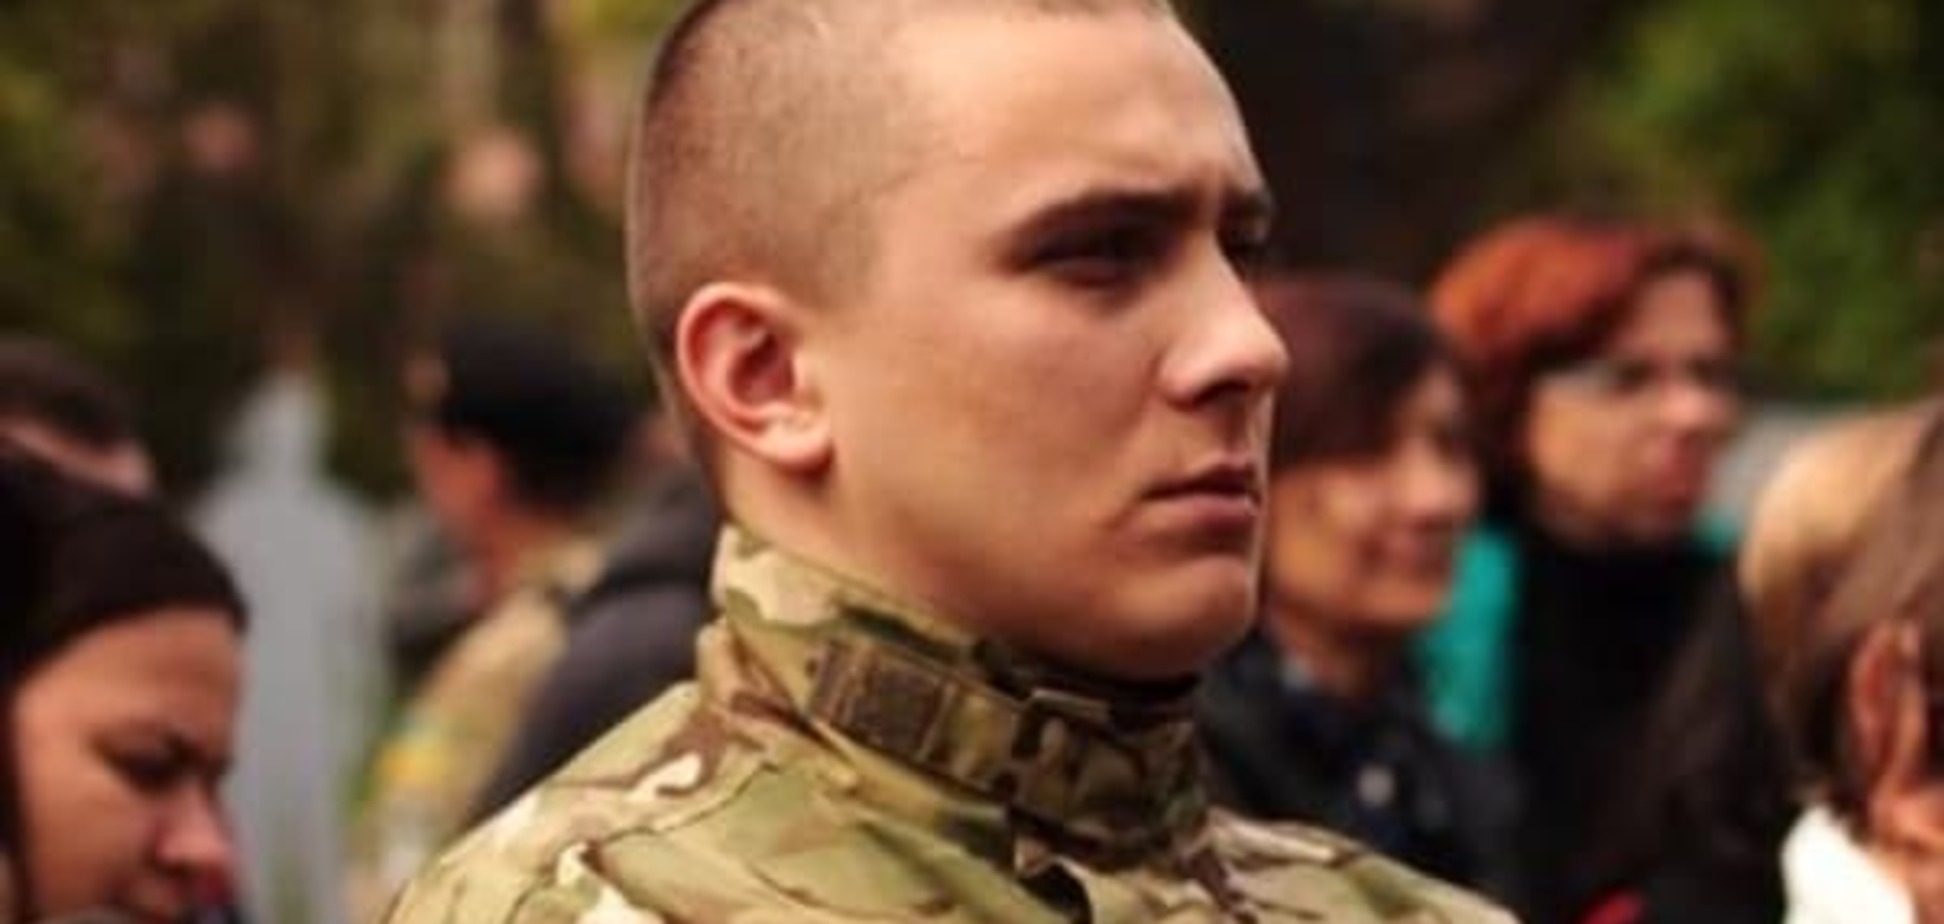 На двух броневиках: в Одессе милиция схватила лидера 'ПС' и 'Автомайдана'